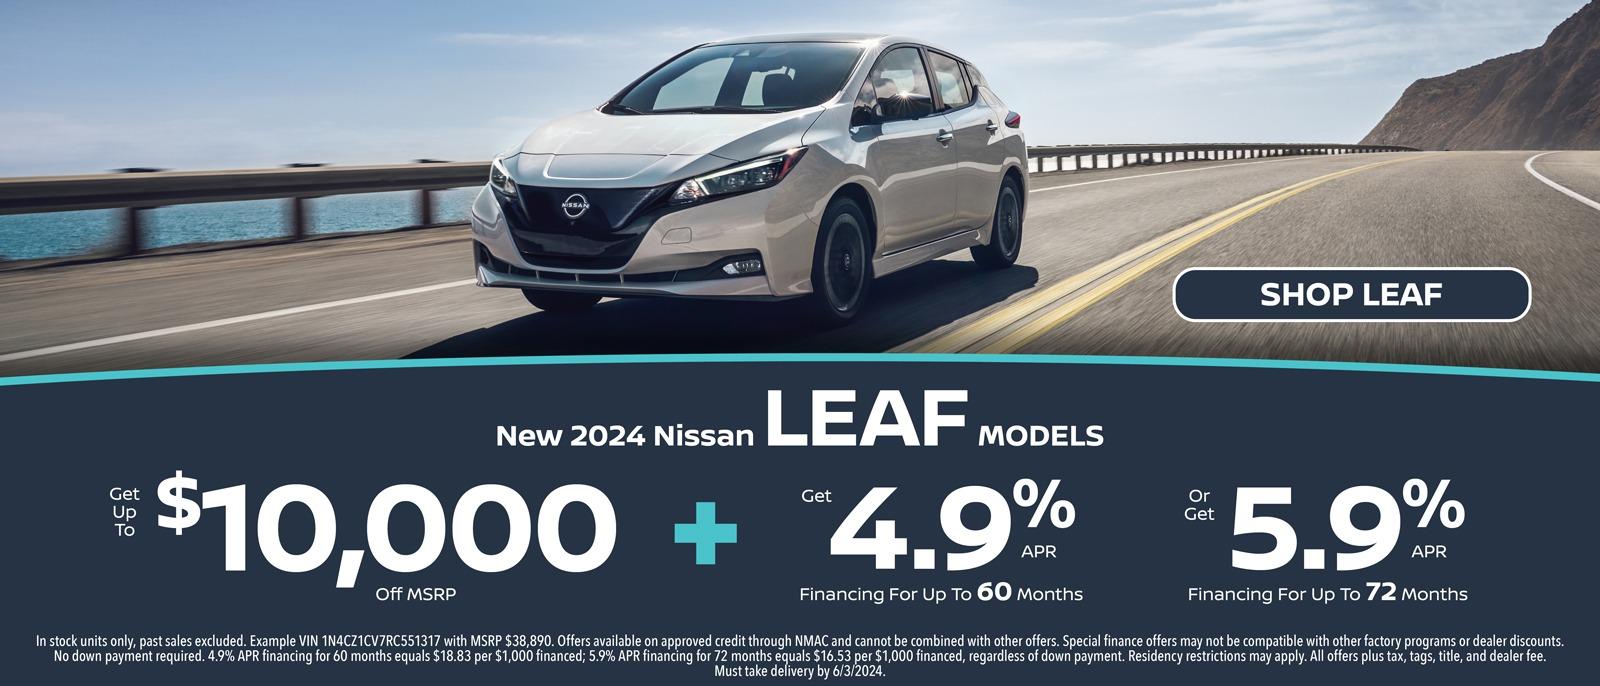 New 2024 Nissan LEAF Models